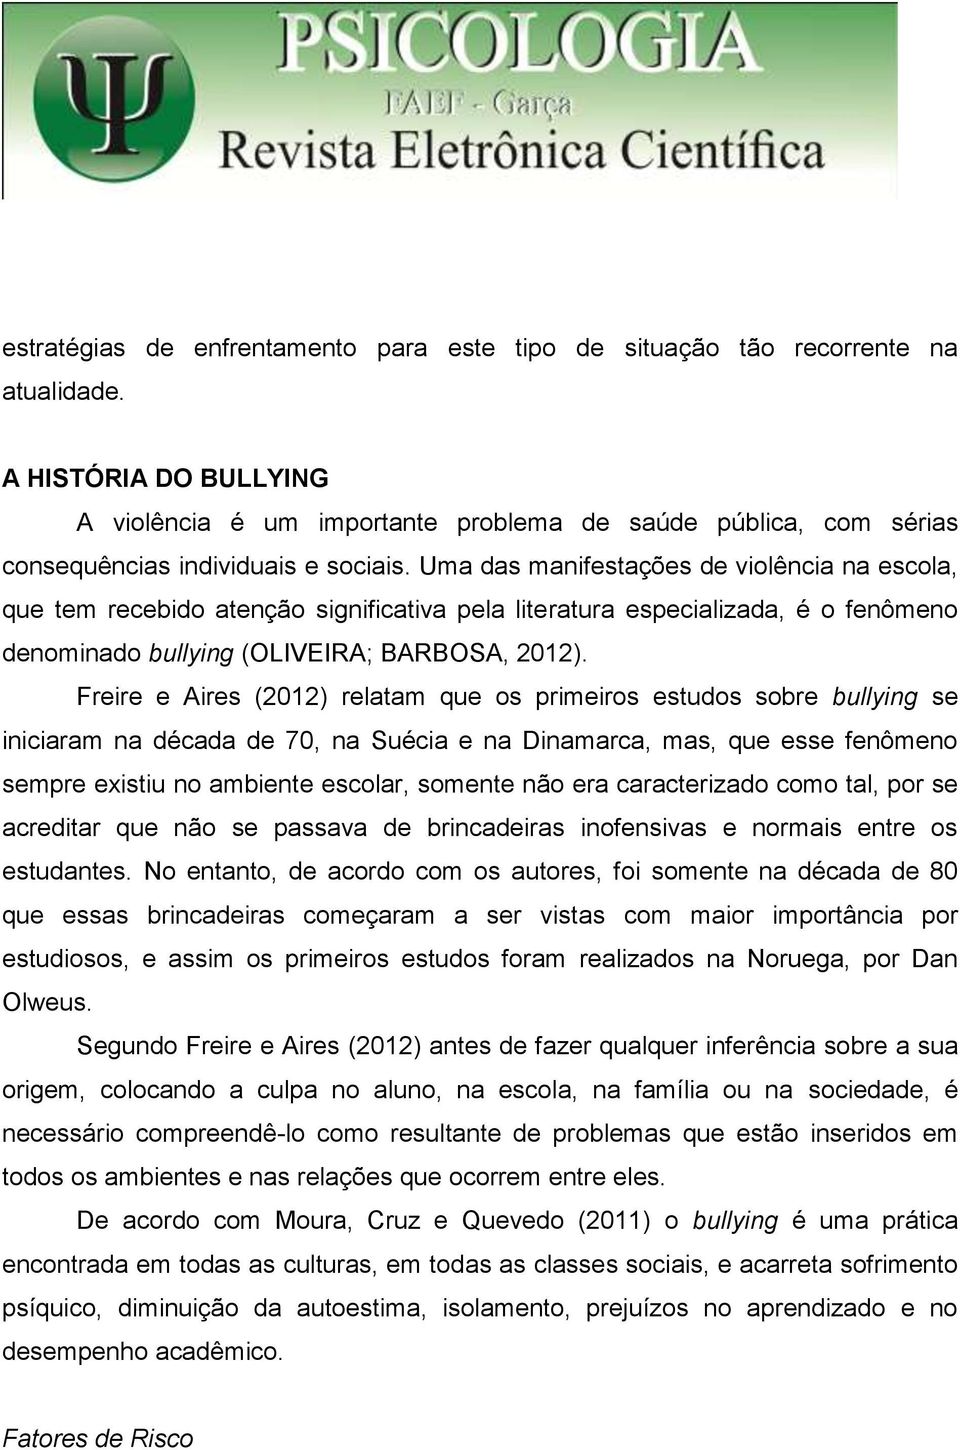 Uma das manifestações de violência na escola, que tem recebido atenção significativa pela literatura especializada, é o fenômeno denominado bullying (OLIVEIRA; BARBOSA, 2012).